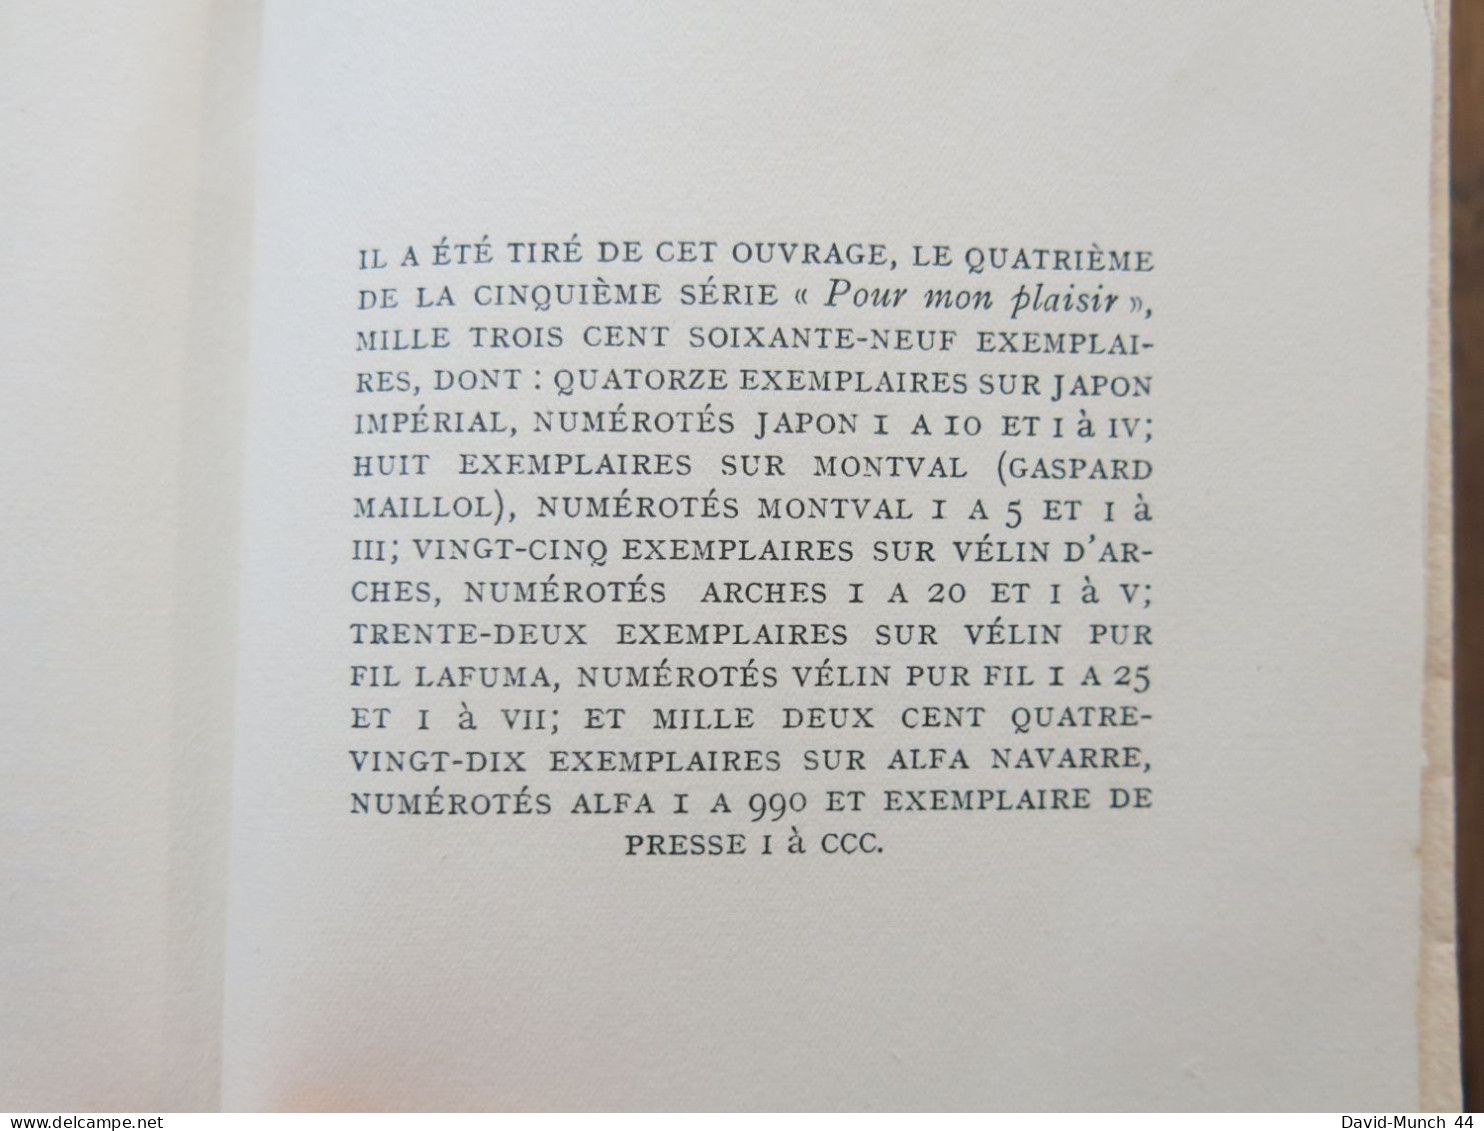 Cité, Nef de Paris de André Suarès. Bernard Grasset, "Pour mon plaisir"-IV. 1934, exemplaire sur Alfa numéroté